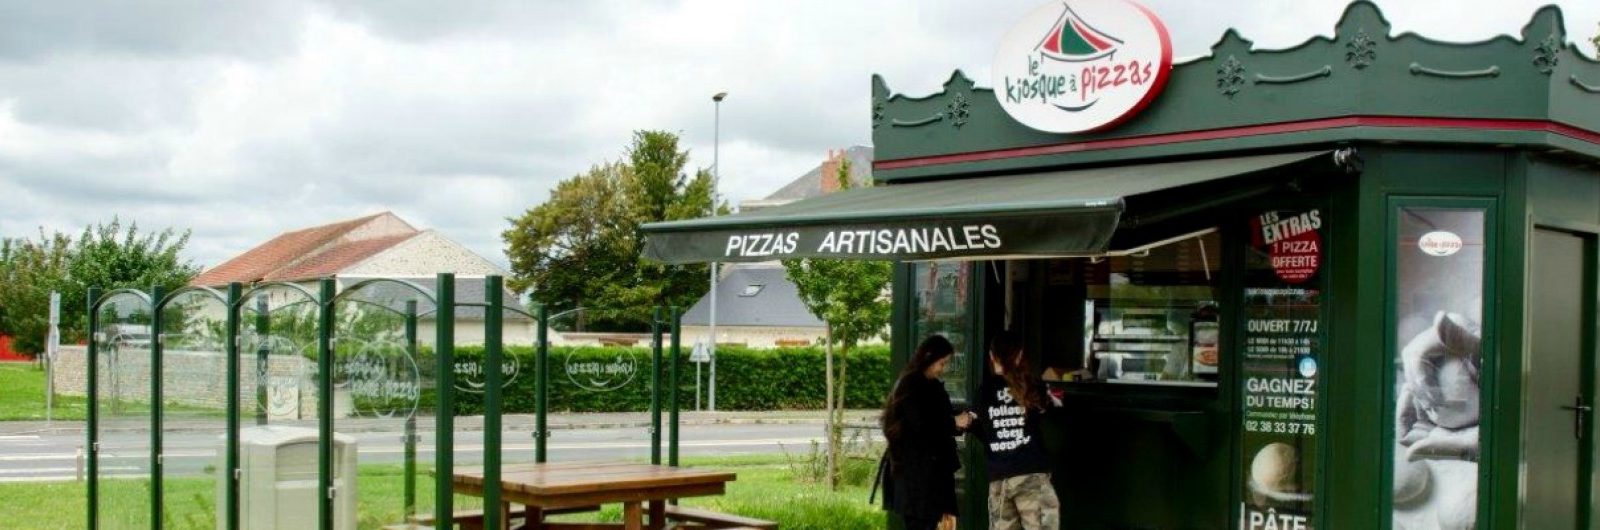 Quiosques de venda de pizzas chegam a Portugal em franchising - Le Kiosque à Pizzas